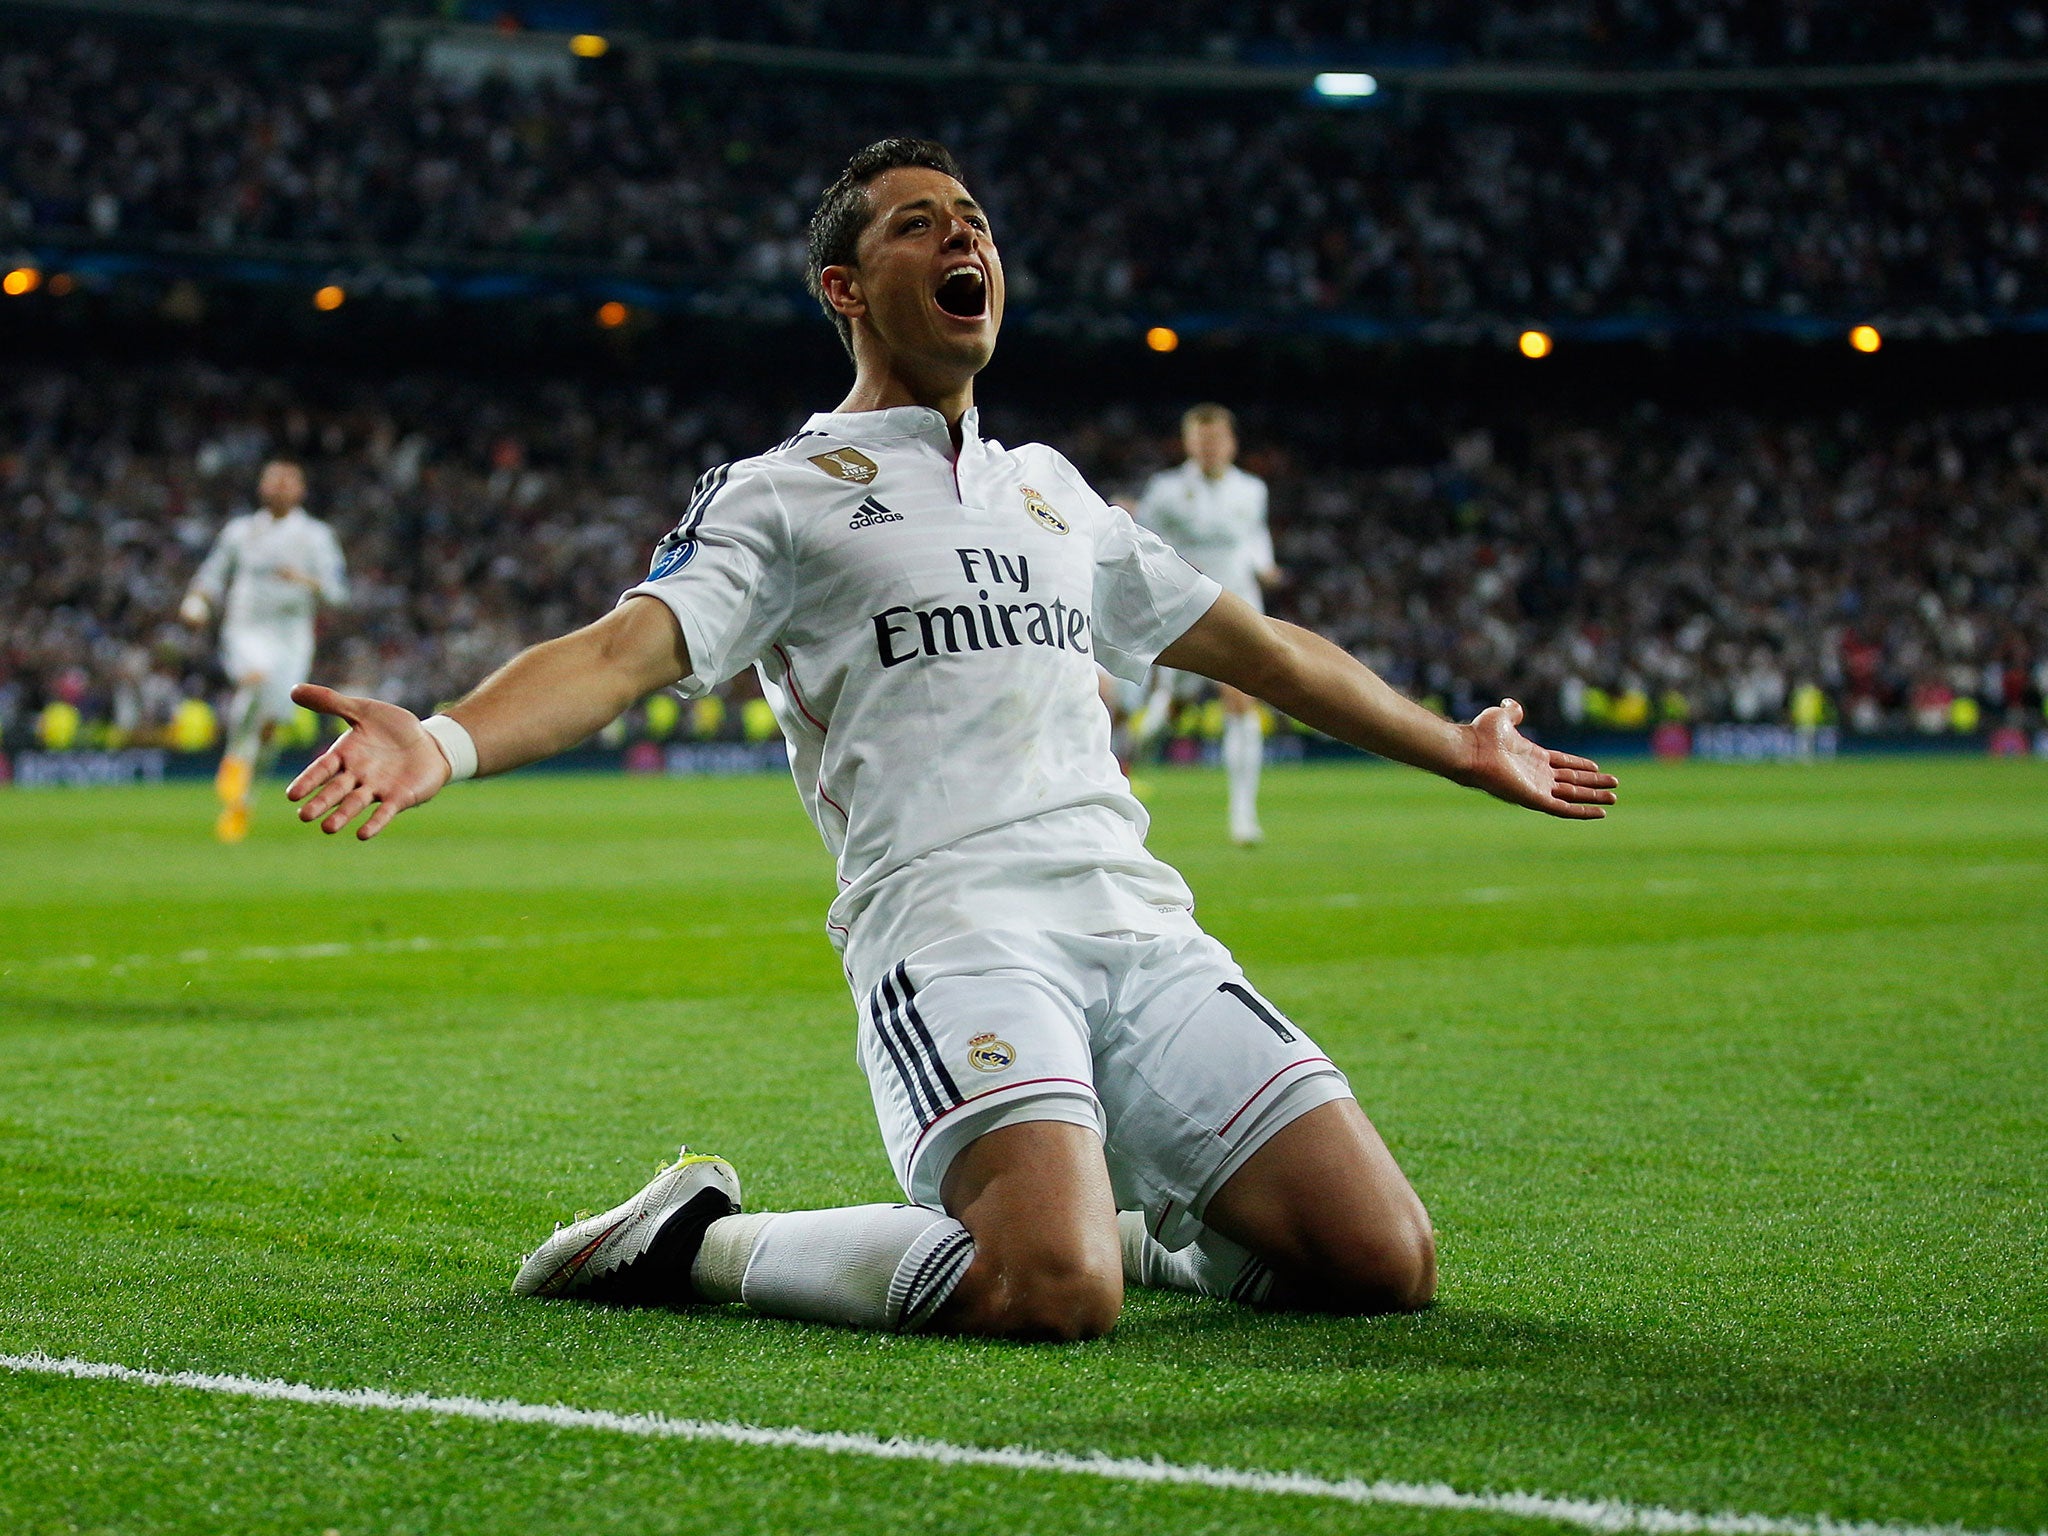 Javier Hernandez was on loan at Real Madrid last season